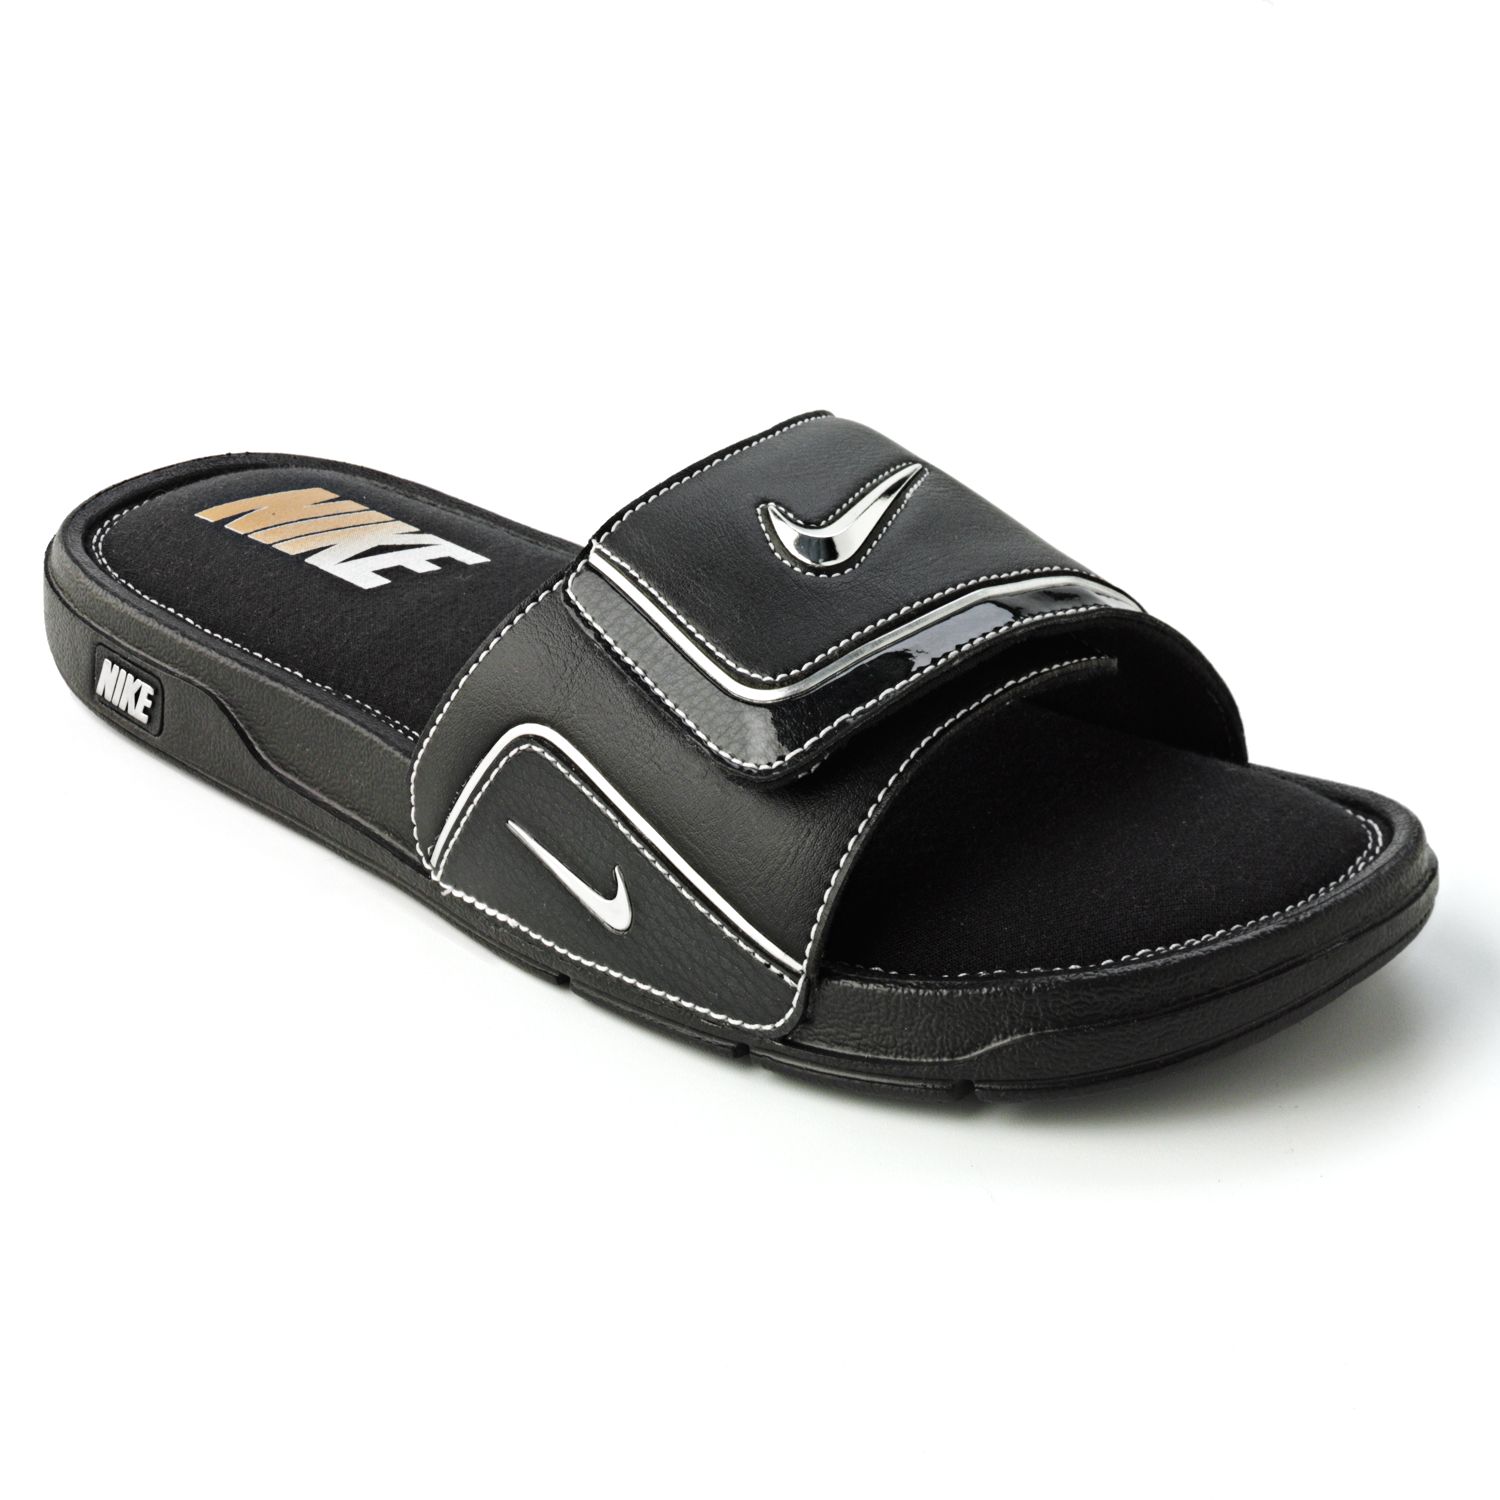 Nike Comfort Slide 2 Sandals - Men